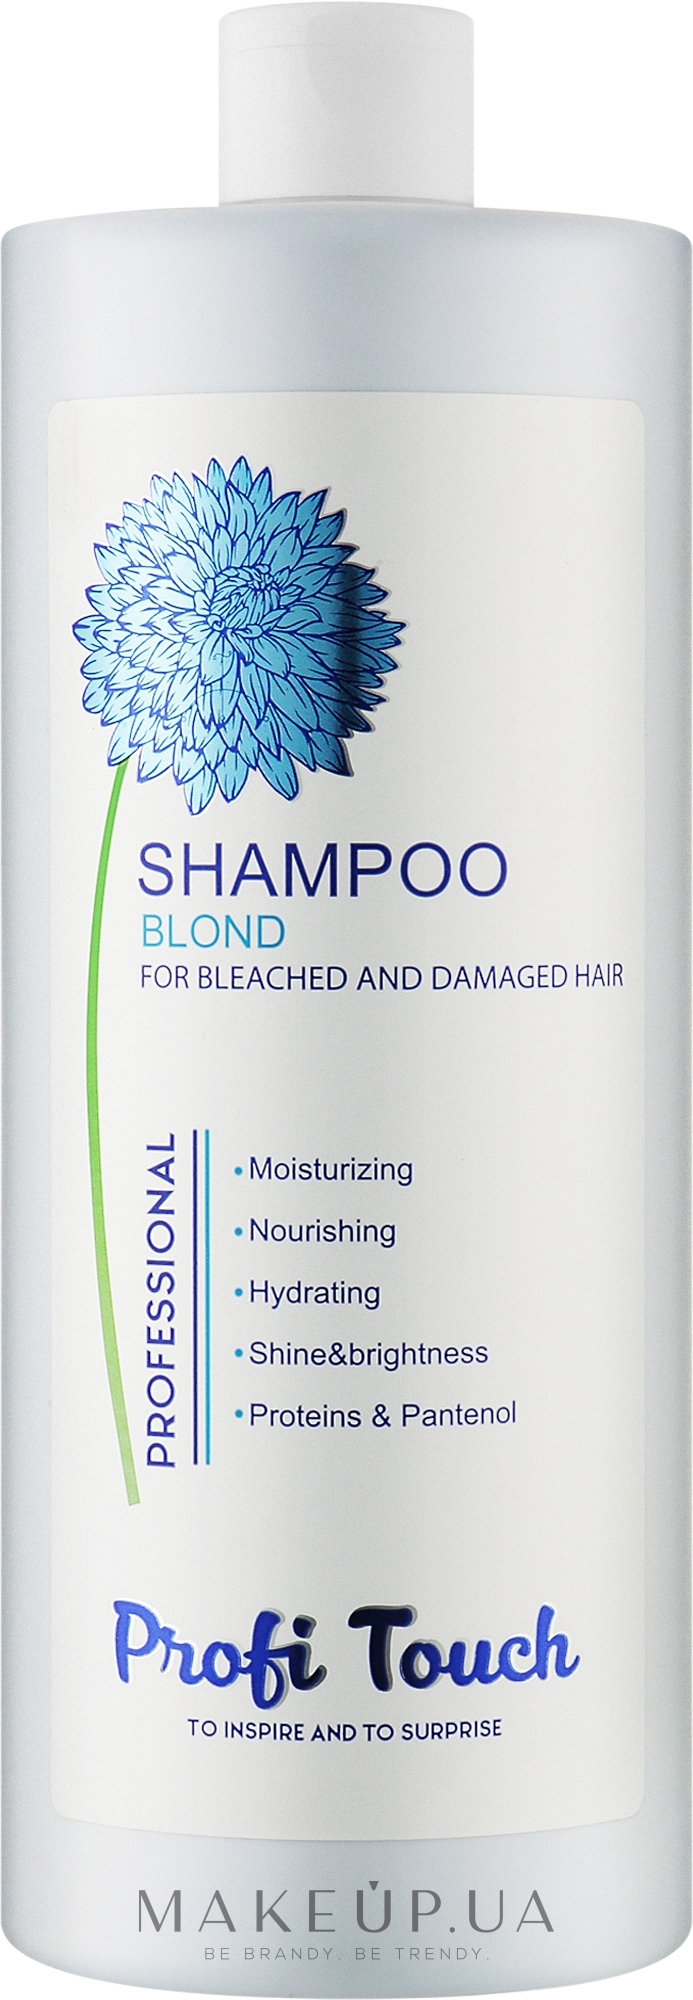 Шампунь для волосся "Blond" - Profi Touch Shampoo  — фото 1000ml